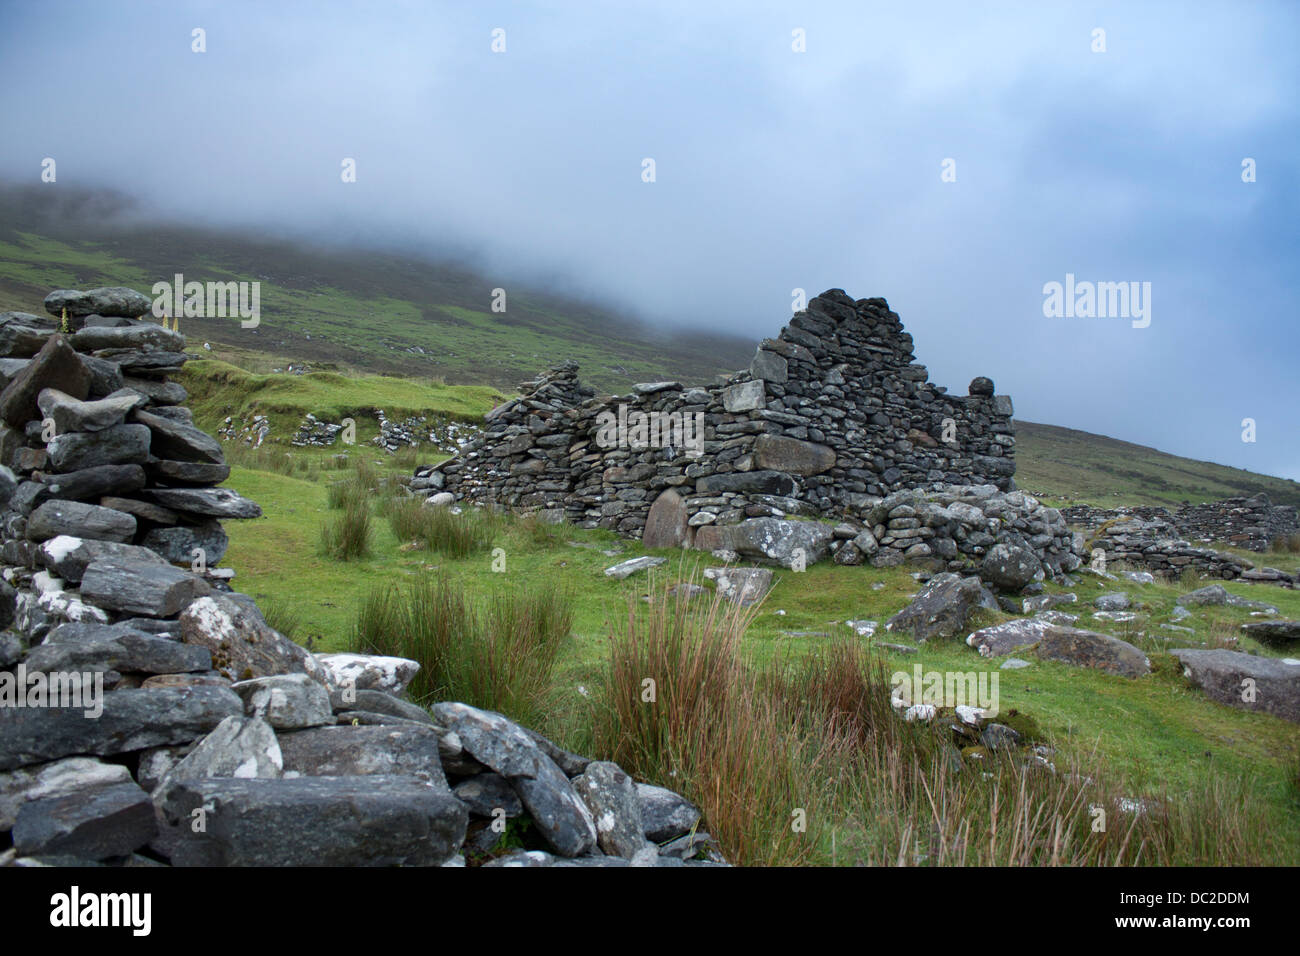 Village déserté Slievemore abandonné après la famine de la pomme de terre dans les années 1850, l'île d'Achill County Mayo Irlande République d'Irlande Banque D'Images